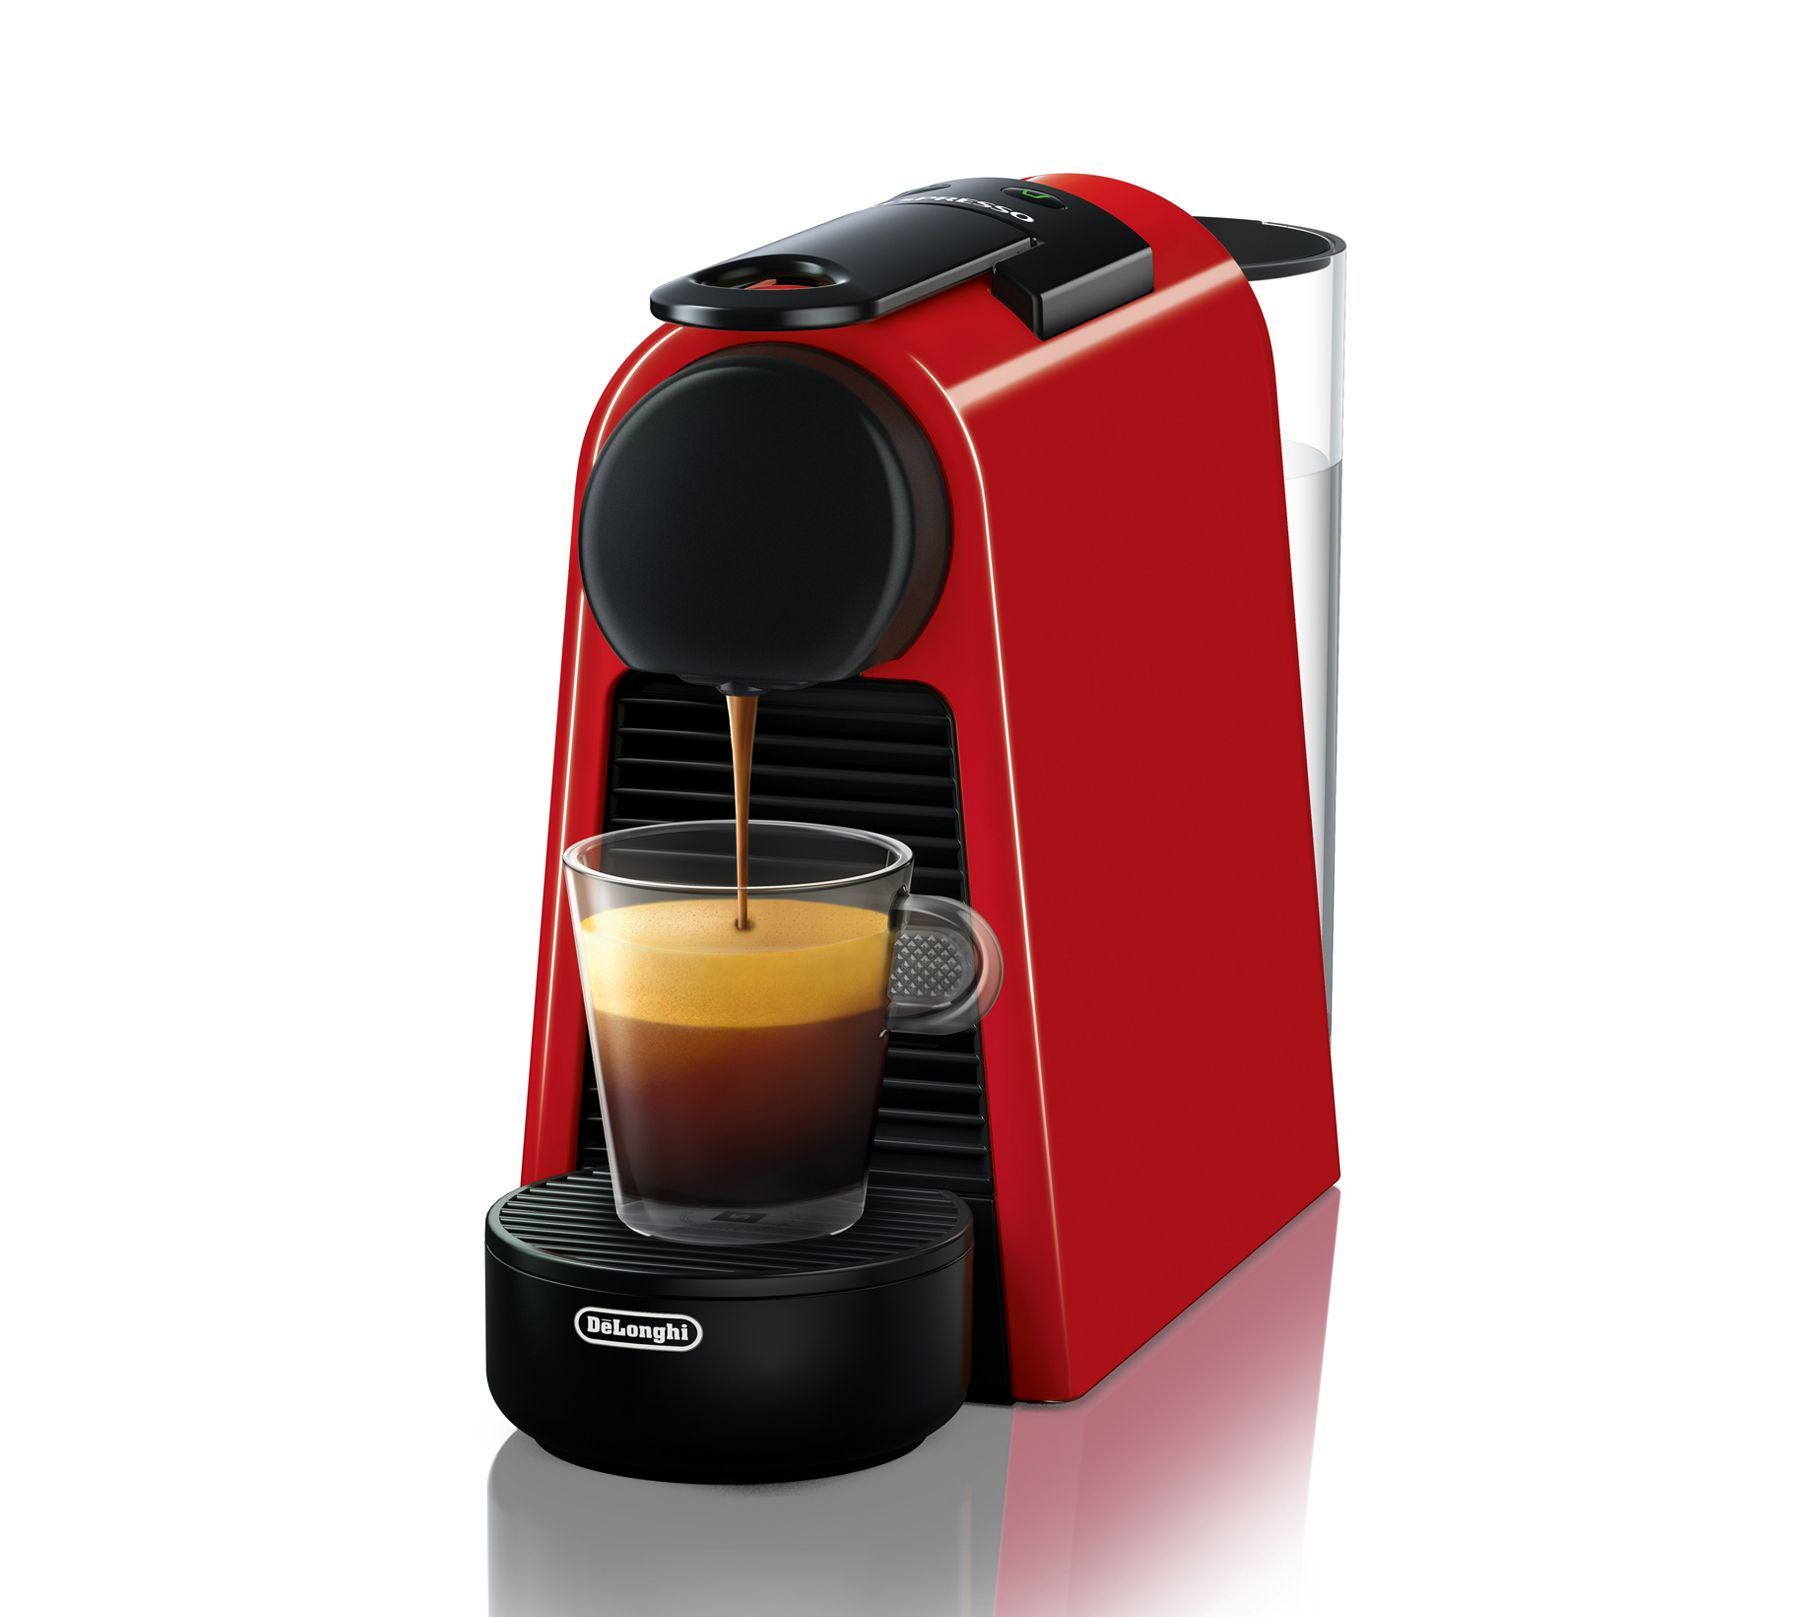 Pr3zz1 P4zz1 - 🛍 Nespresso Inissia Macchina per caffé espresso, a capsule,  1260 W, 0.7 L, Rosso (Ruby Red) [Classe di efficienza energetica A++] 🔥  Prezzo scontato: 59,90€ 🔗 Vedi l'offerta 🔗 